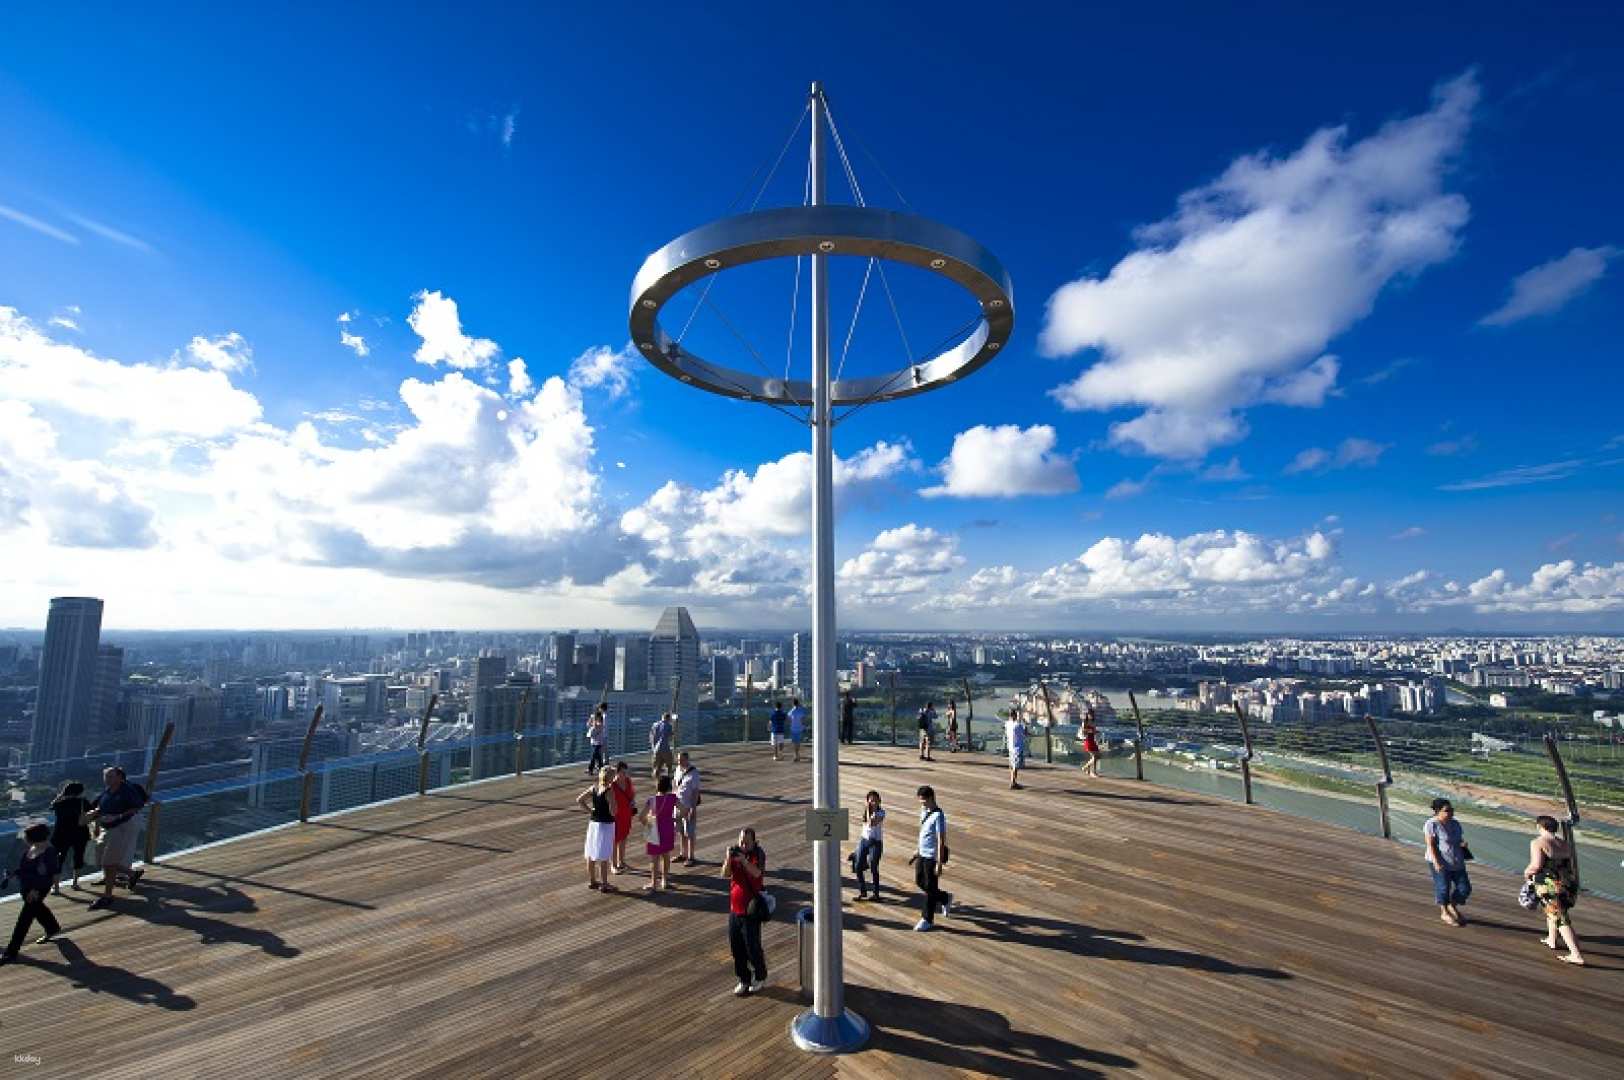 Marina Bay Sands: Skypark Observation Deck Admission Ticket